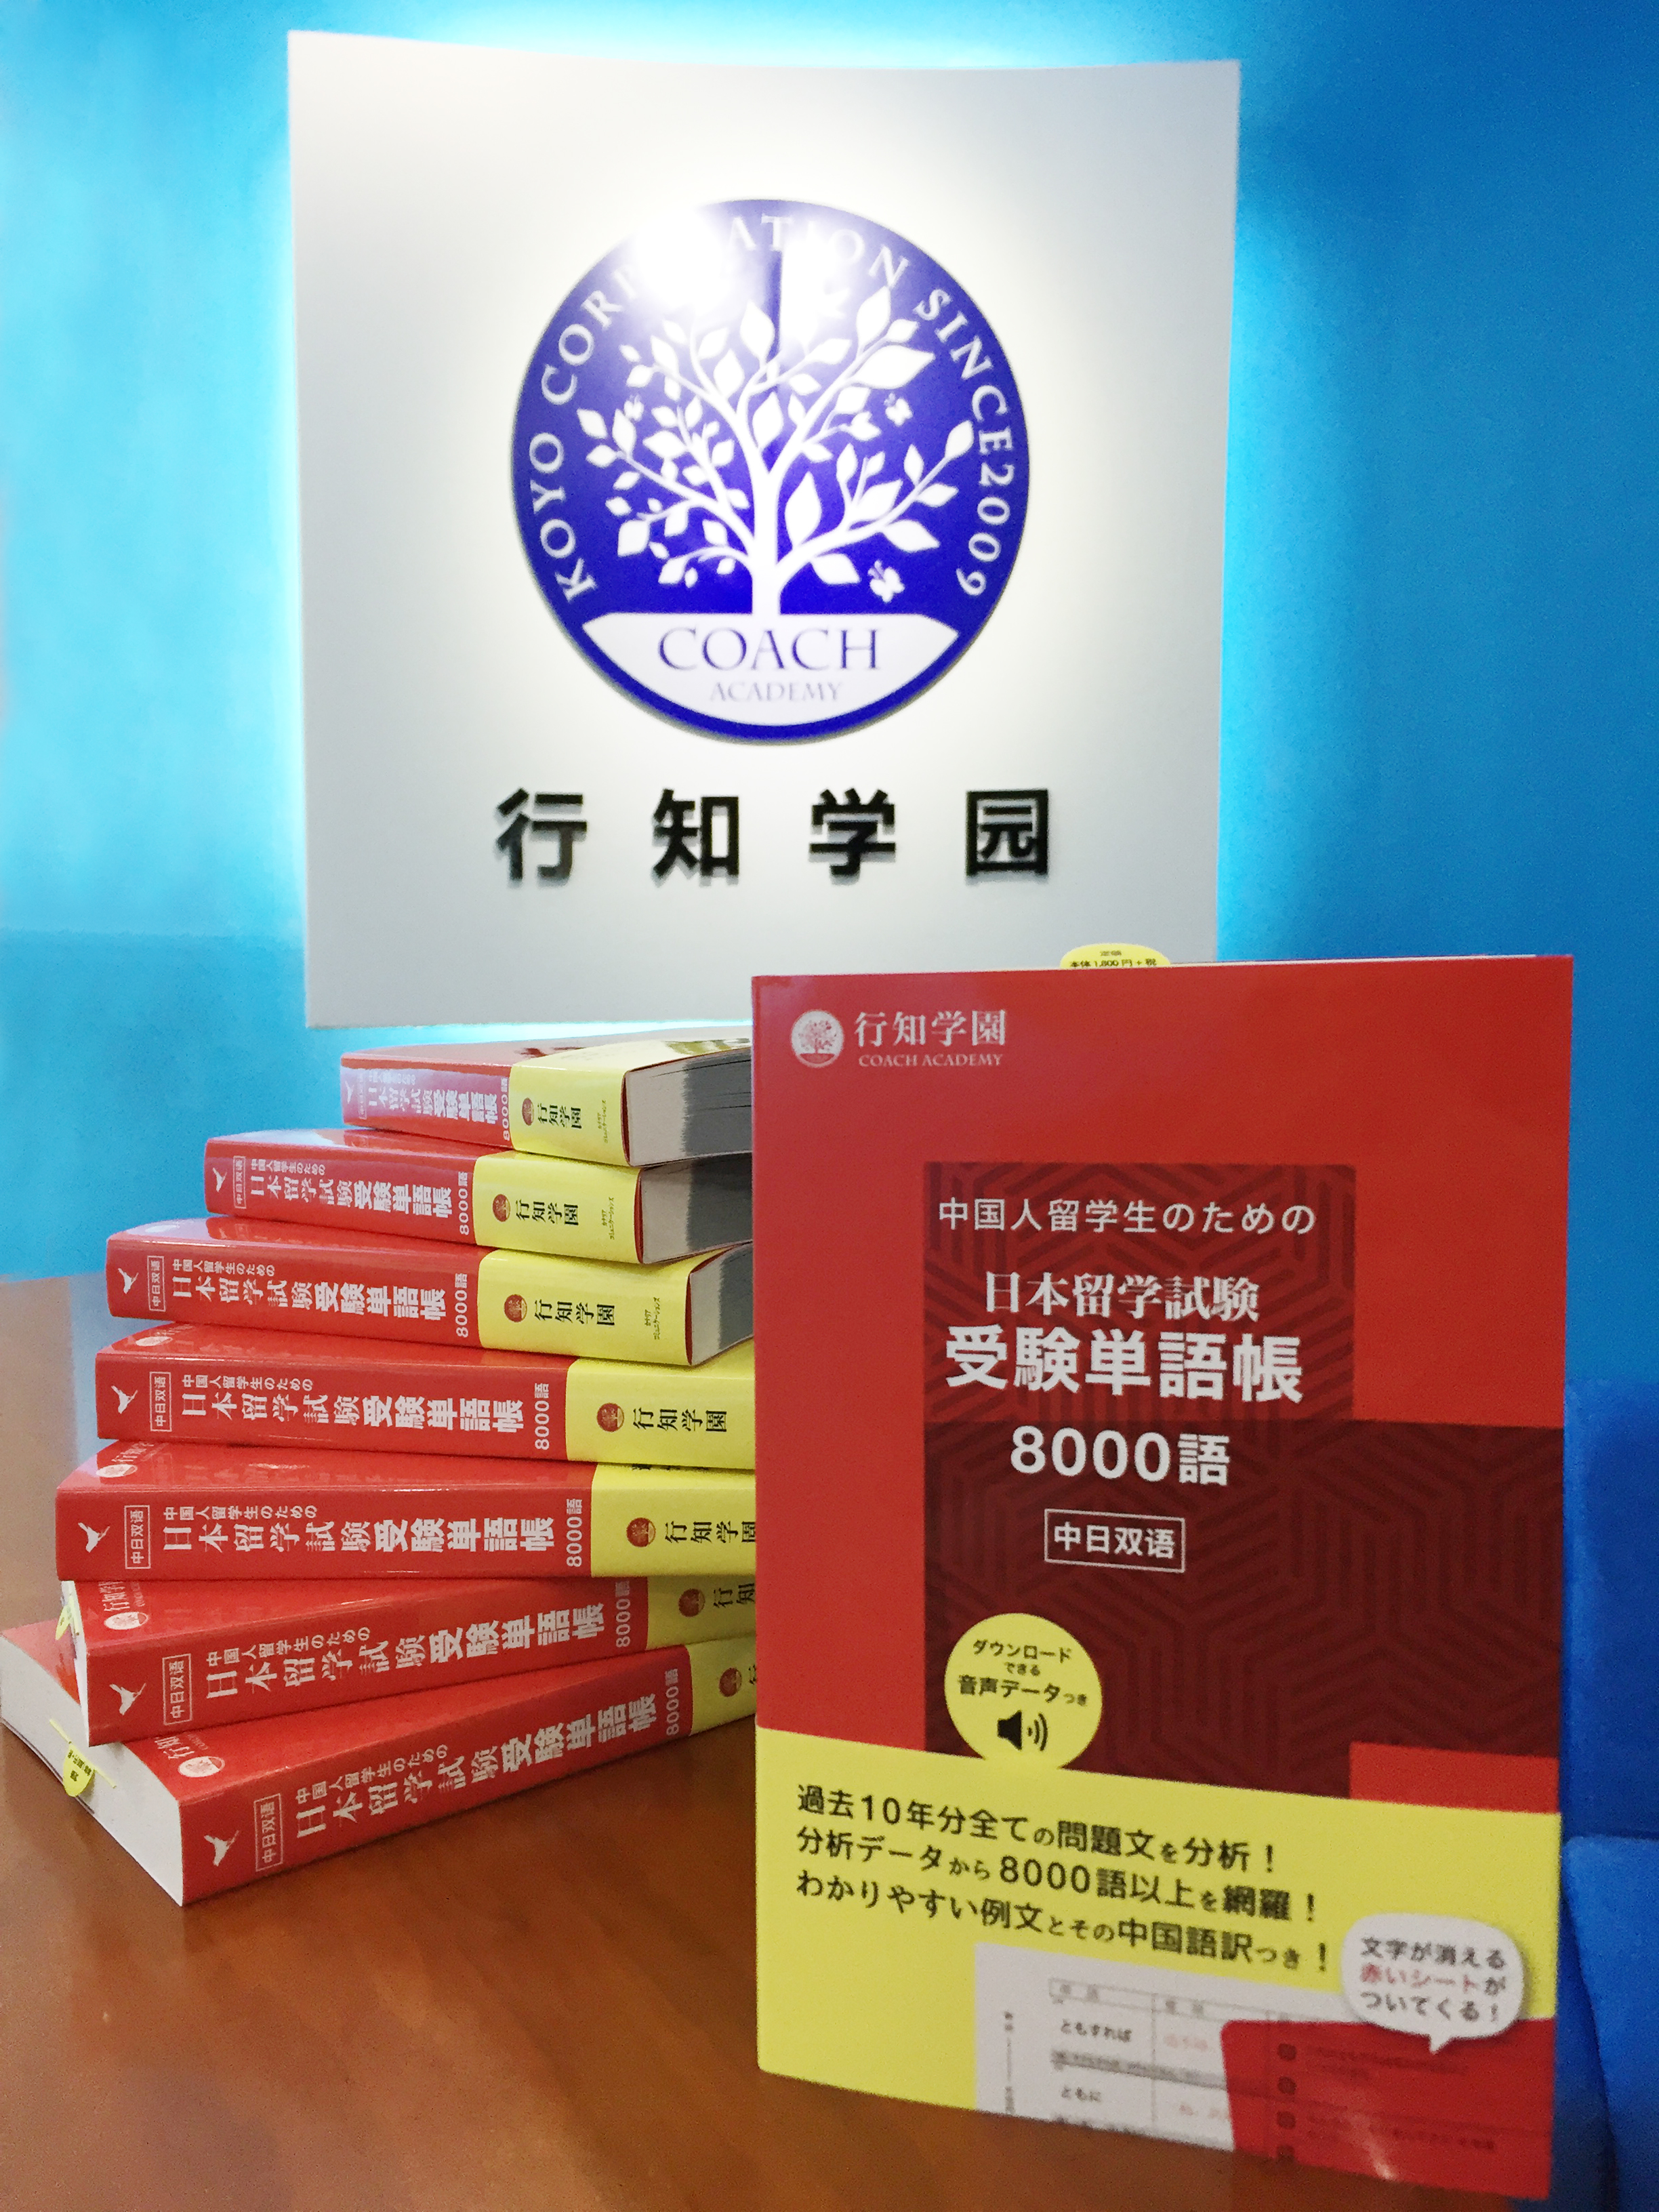 中国人留学生のための日本留学試験受験単語帳8000語』の増刷 - 行知学園株式会社